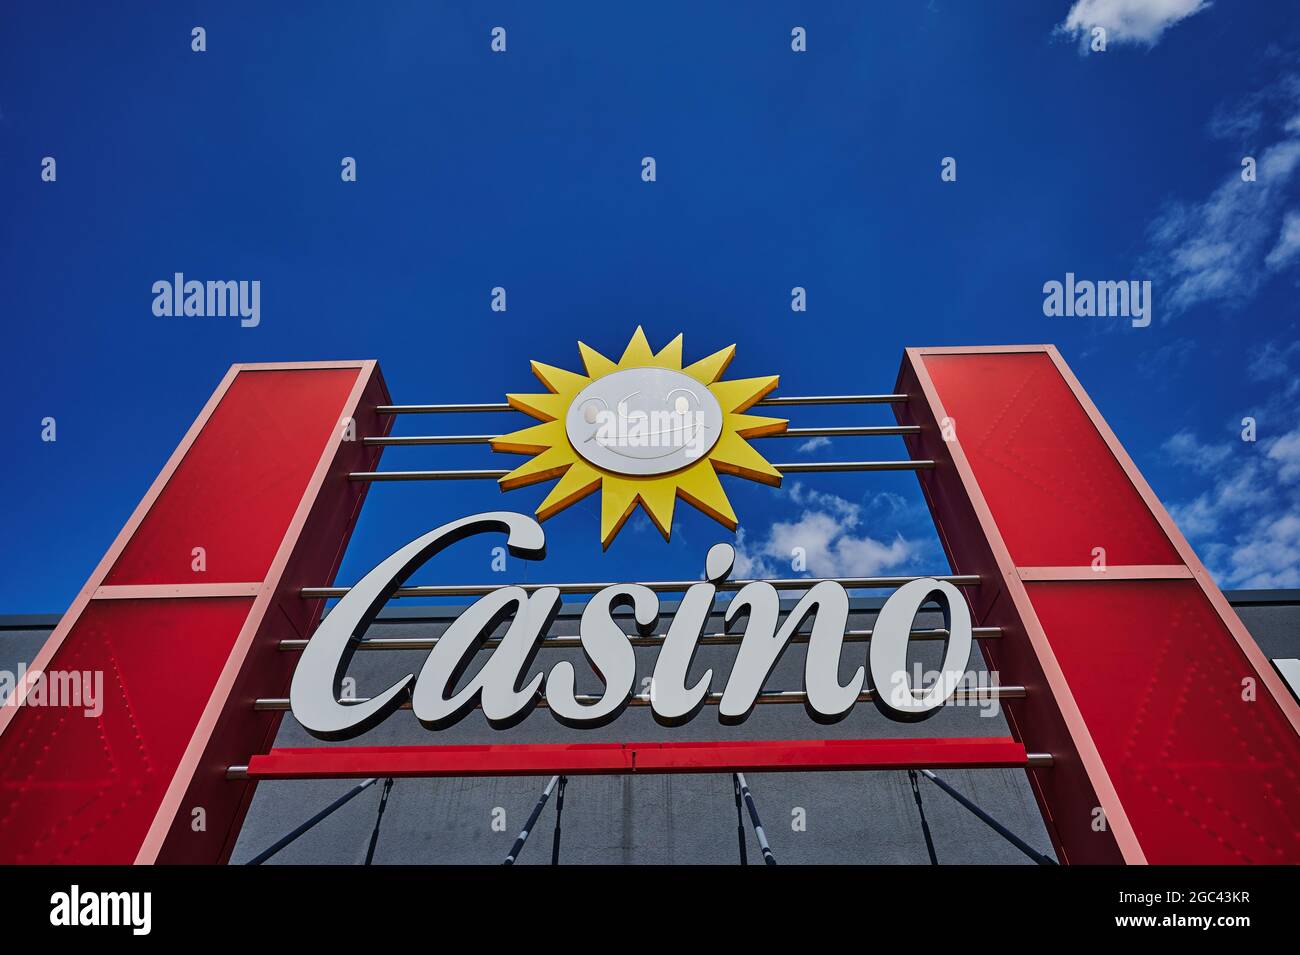 1win online casino için 3 Harika Araç Daha